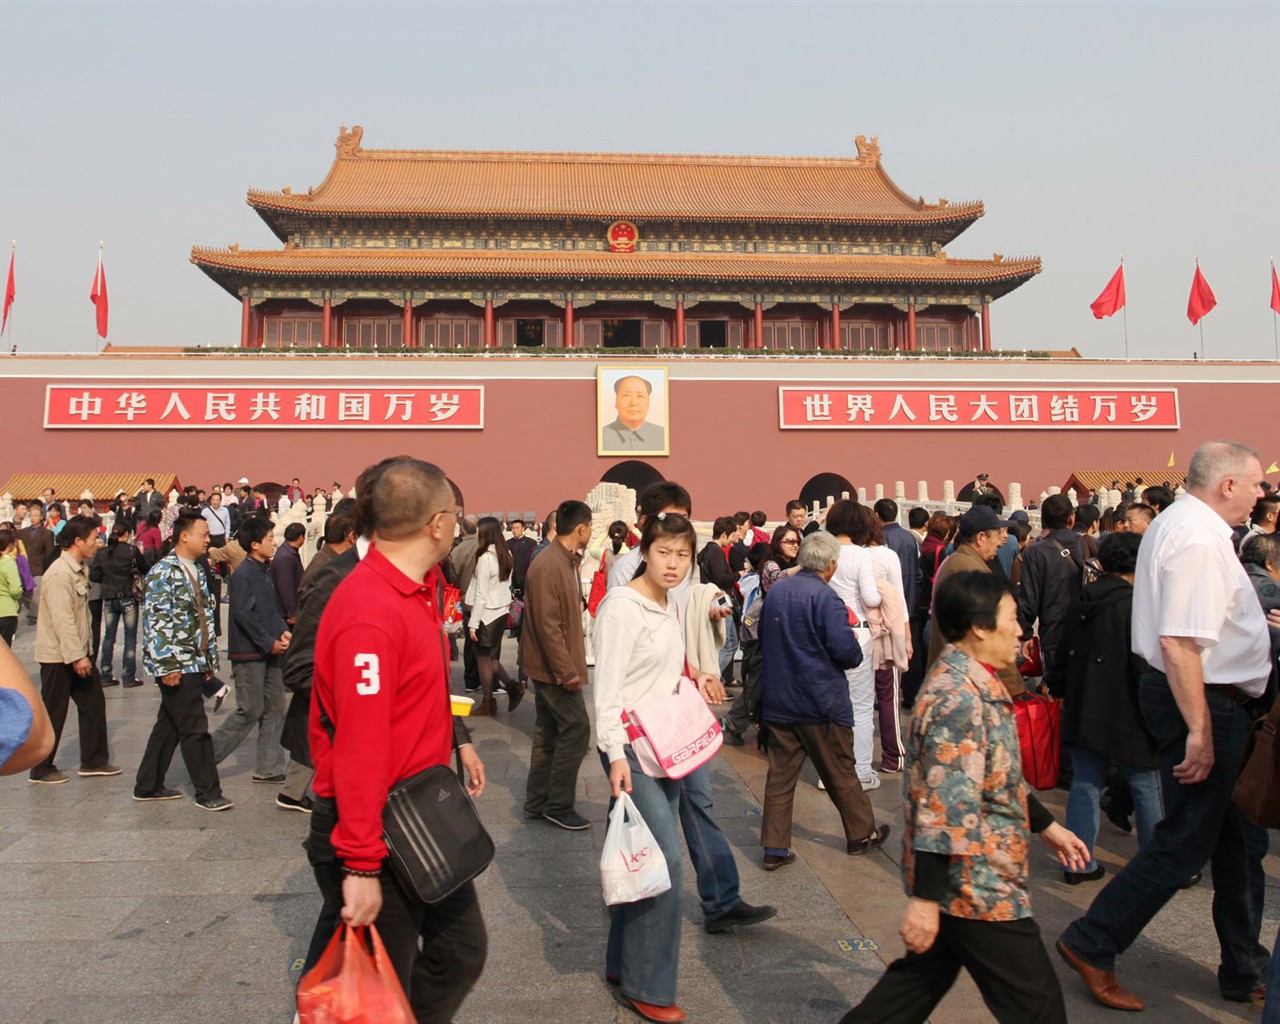 Tour Beijing - Platz des Himmlischen Friedens (GGC Werke) #12 - 1280x1024